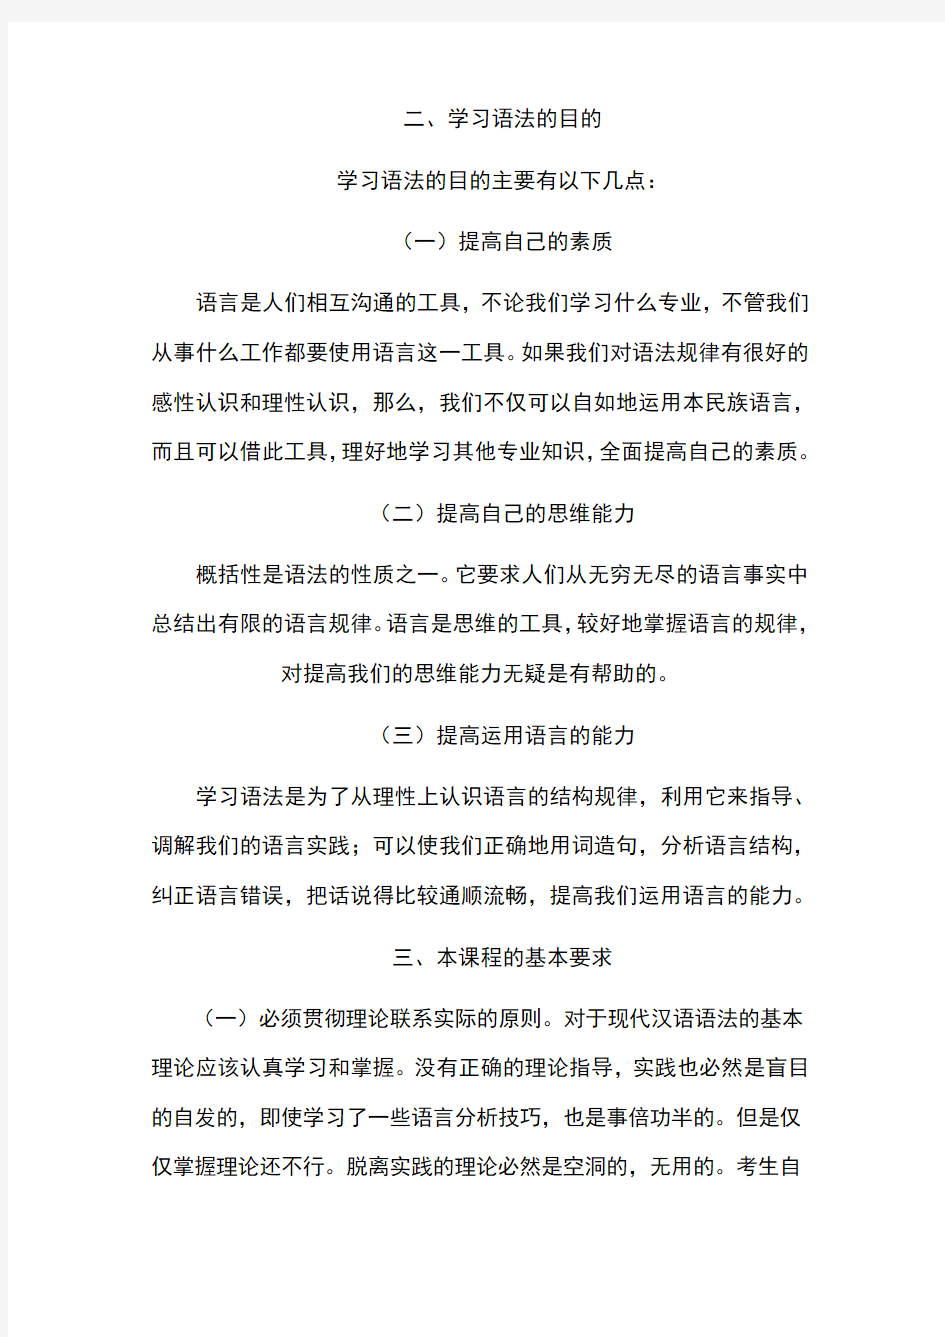 江苏自学考试现代汉语语法研究教材大纲